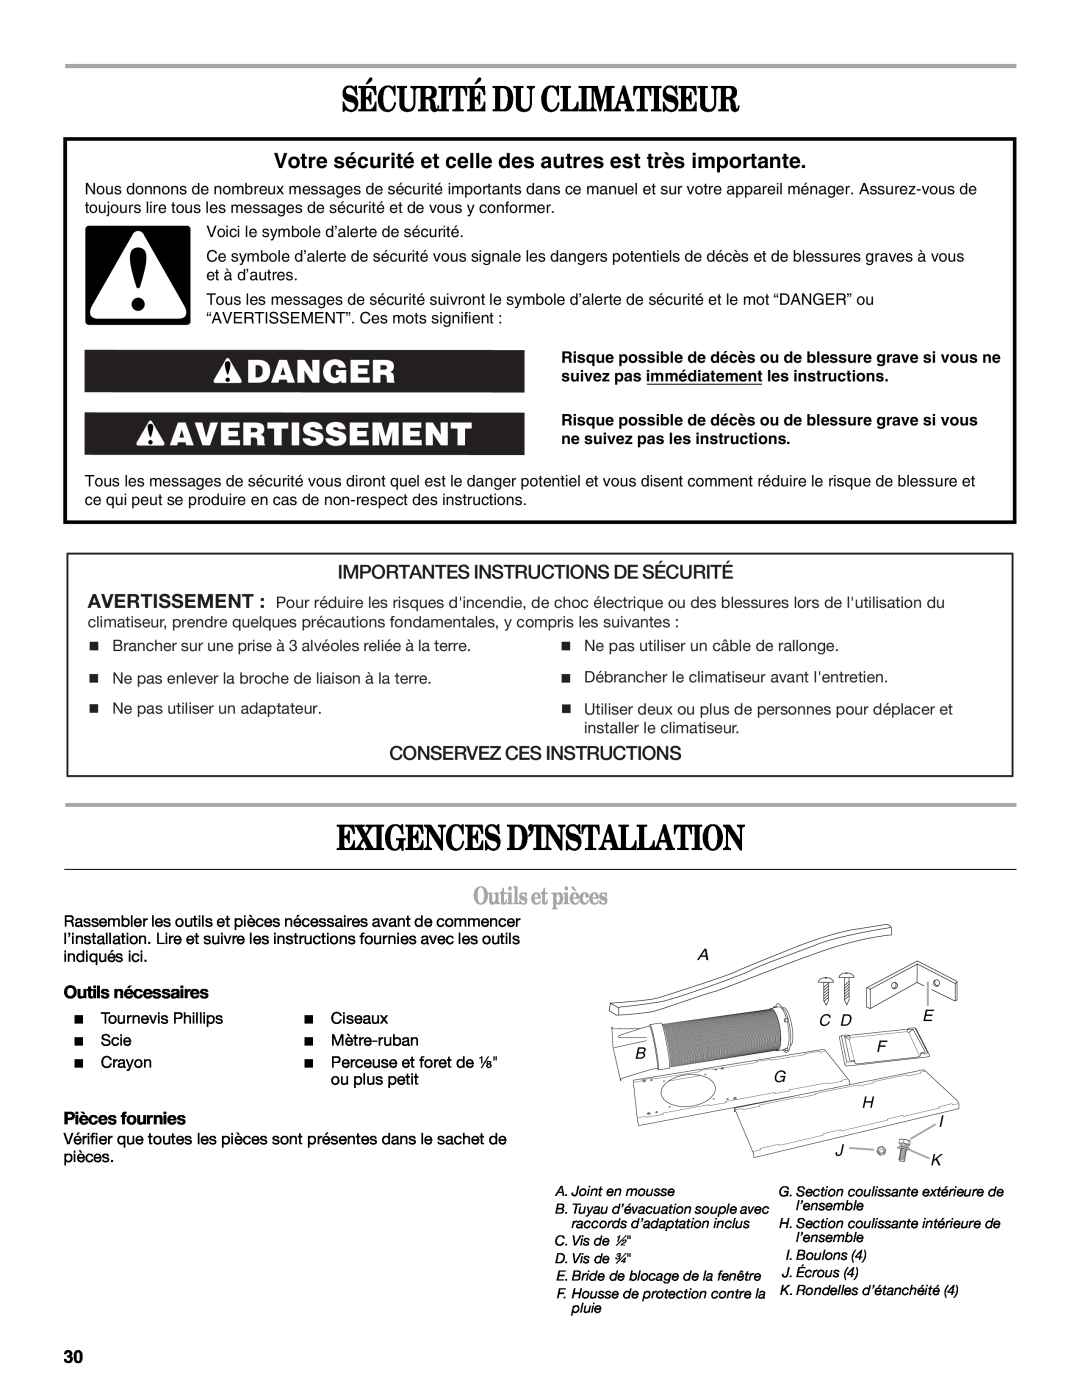 Whirlpool 1328891 Sécurité Du Climatiseur, Exigences D’Installation, Danger Avertissement, Outilsetpièces, Pièces fournies 